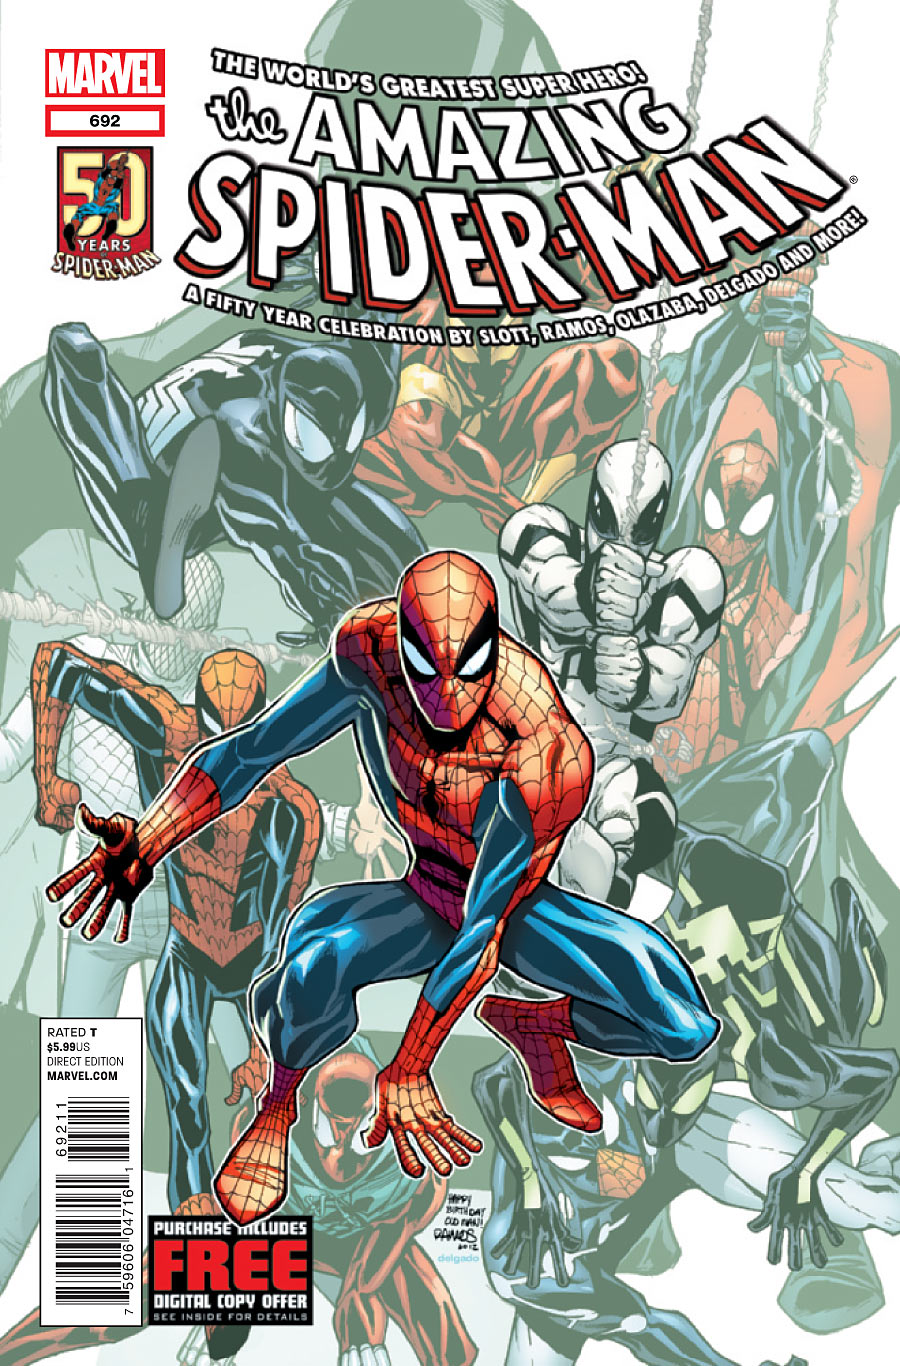 Amazing Spider-Man Vol. 1 #692